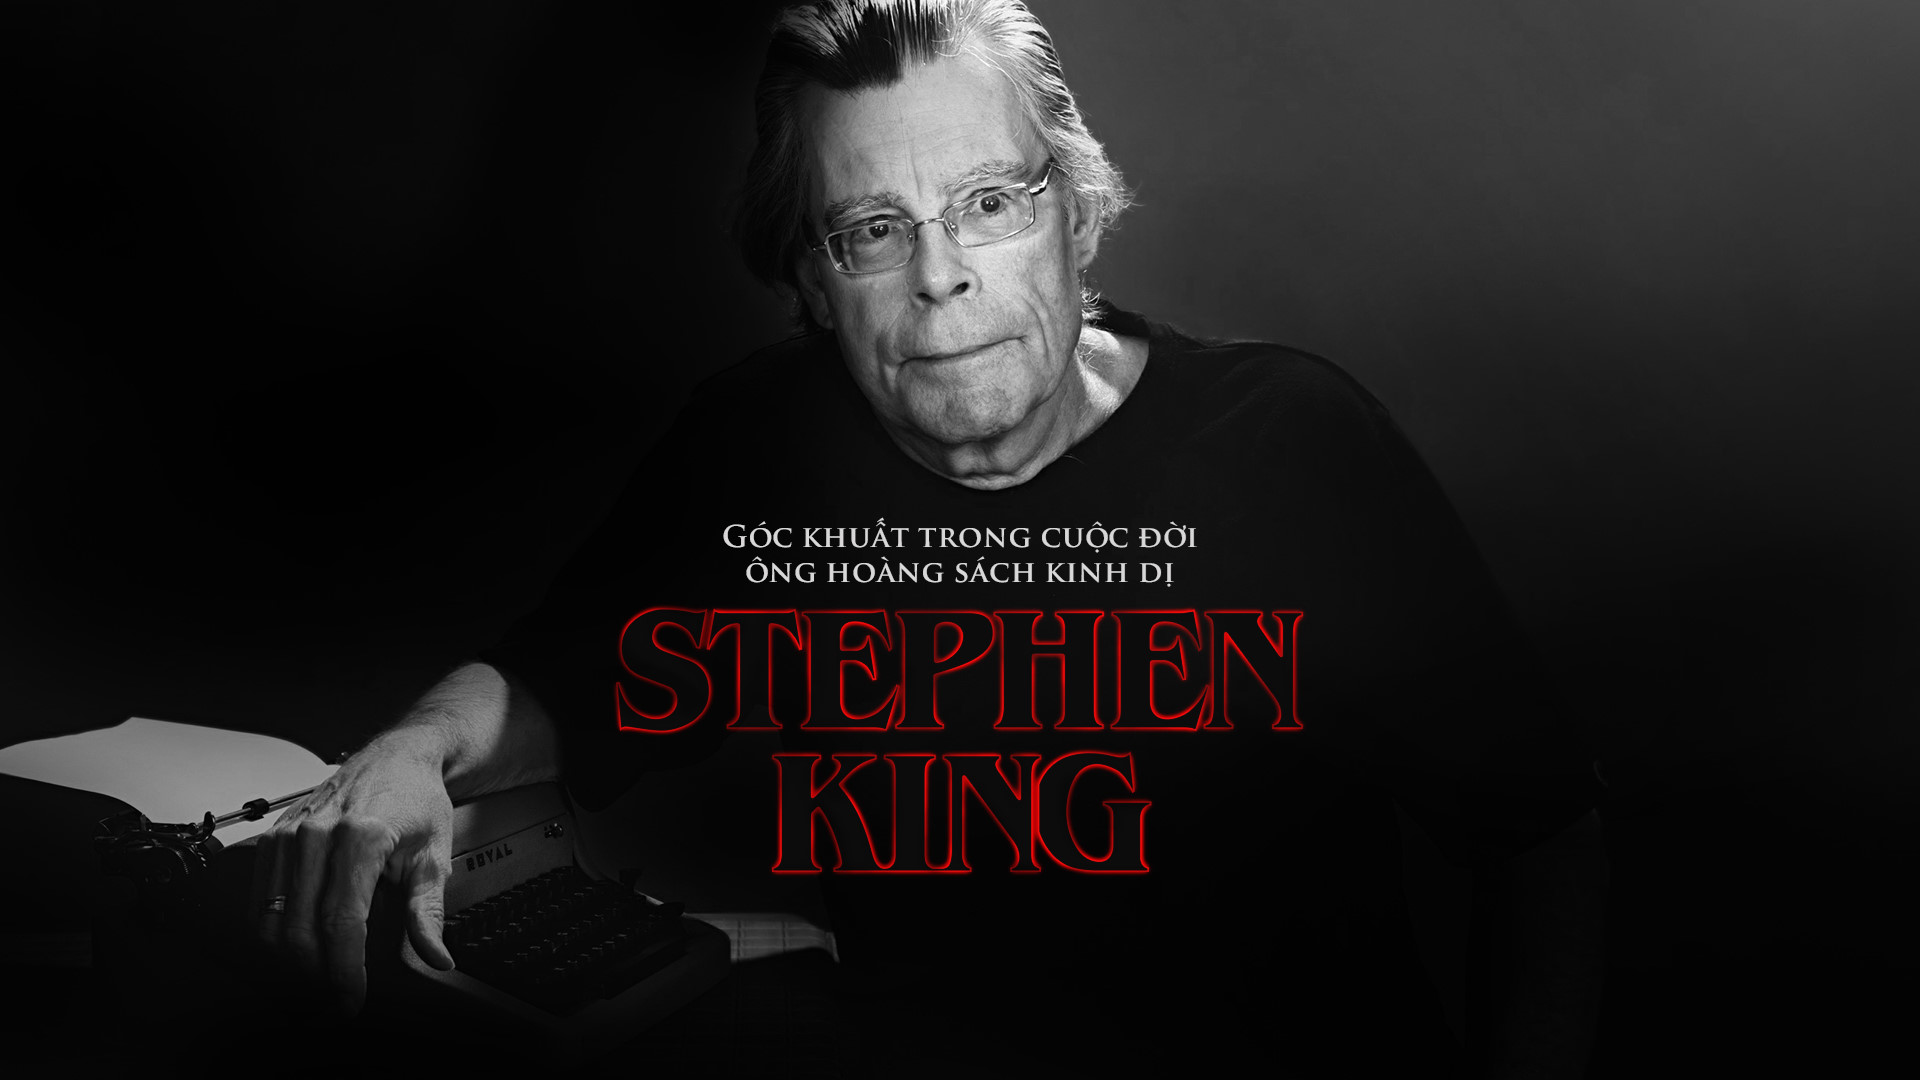 Stephen King: Goc khuat trong cuoc doi ong hoang sach kinh di hinh anh 2 